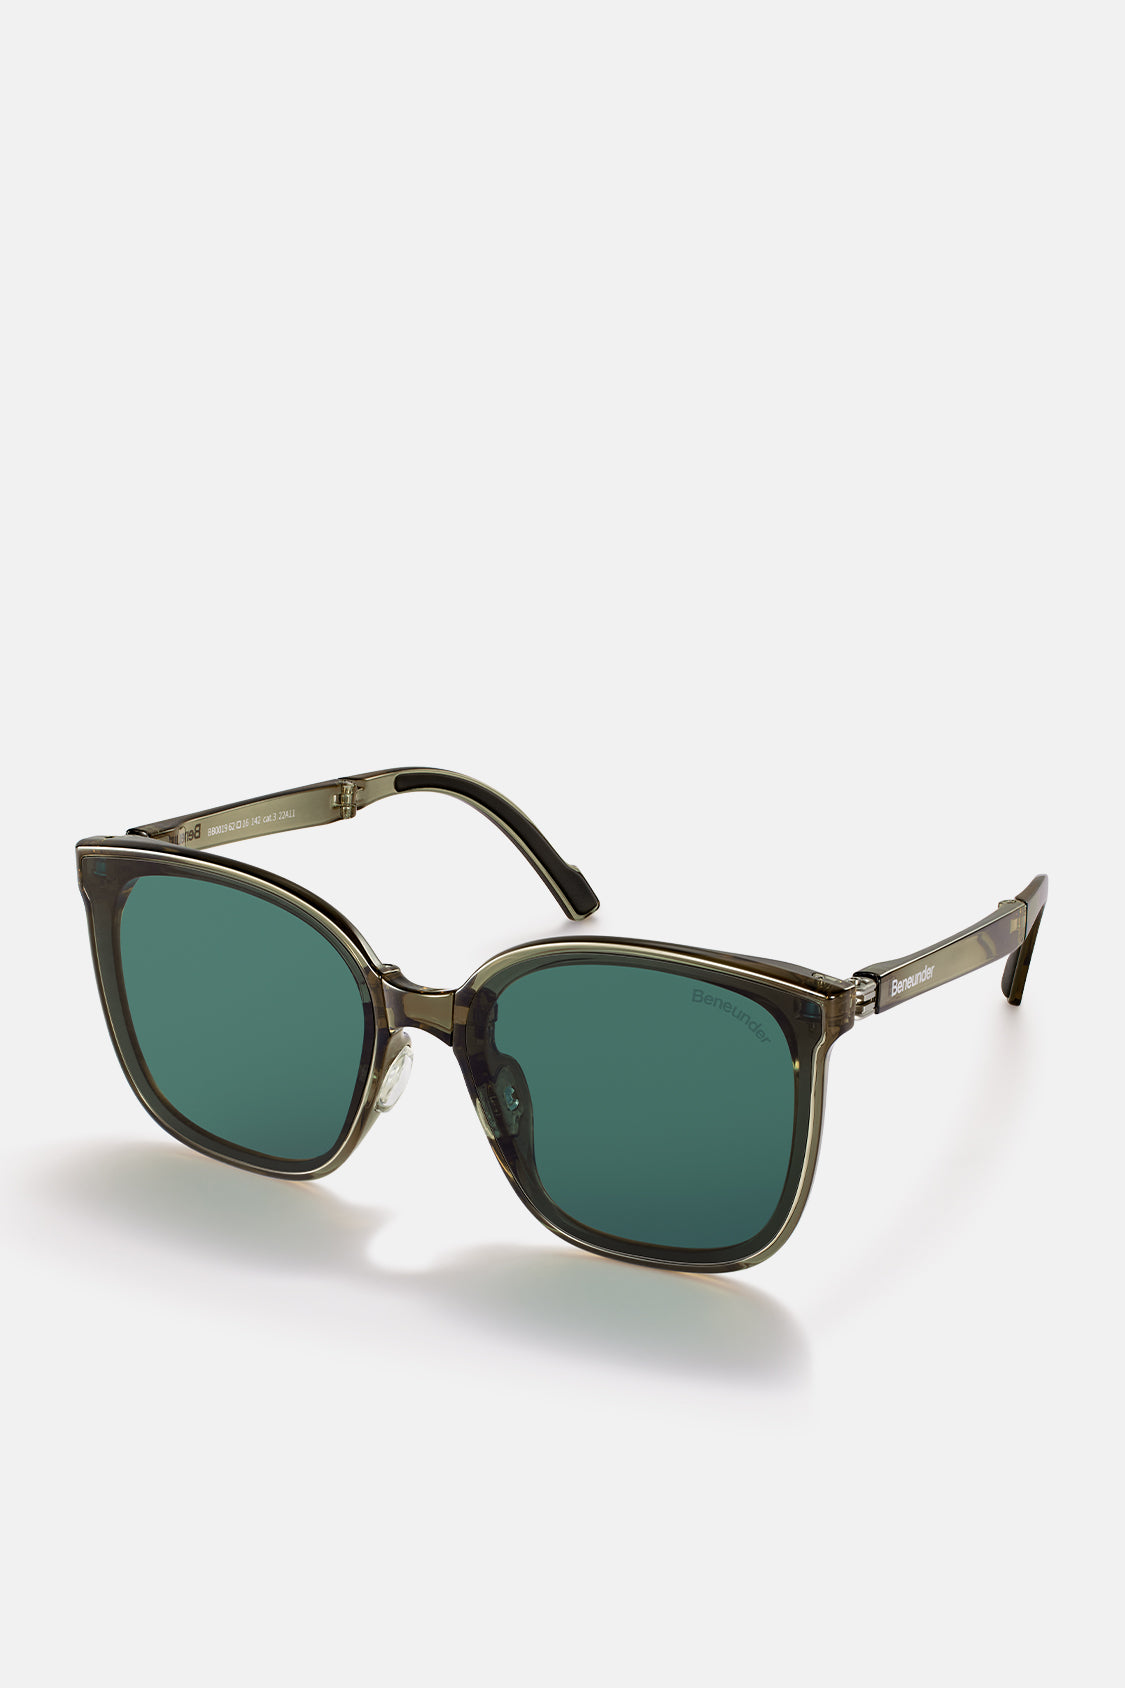 Polarized Folding Sunglasses for Women&Men, Beneunder UV400 Protection  Super Lightweight Designer Square Sunglasses for Driving, Fishing, Hiking,  Golf